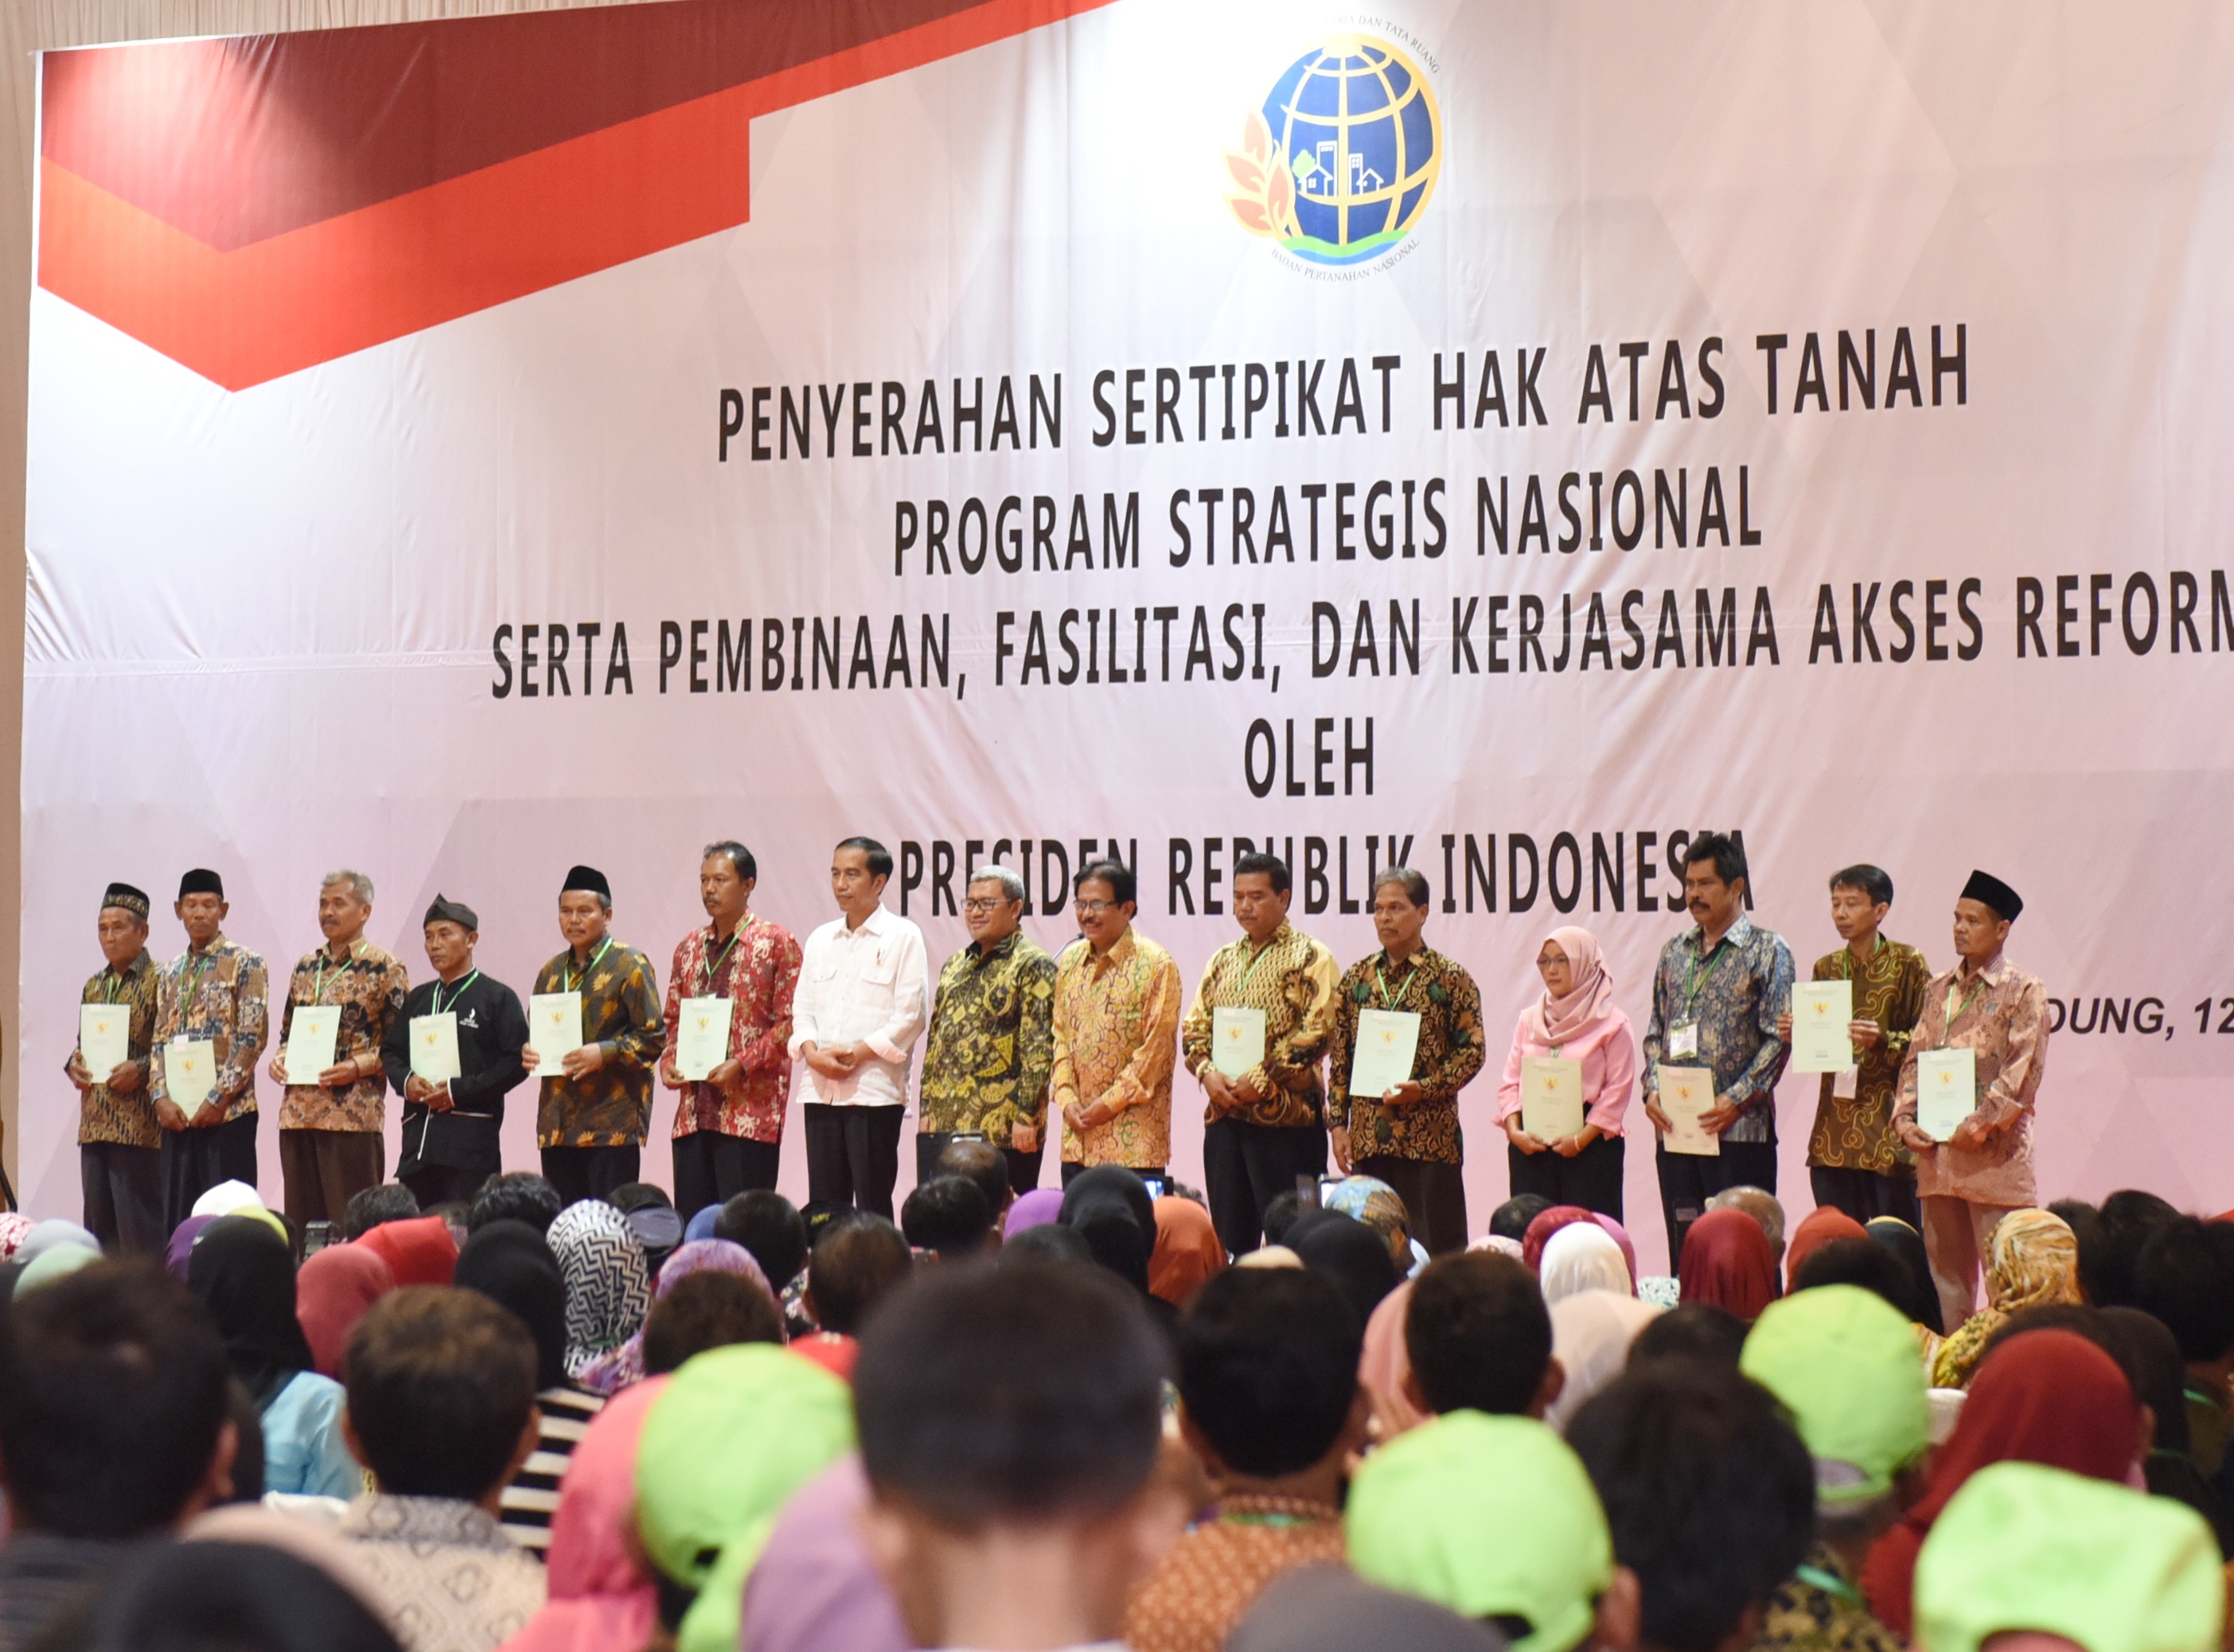 Presiden Jokowi saat menghadiri penyerahan sertifikat tanah di Graha Batununggal Indah, Bandung Kidul, Bandung, Rabu (12/4). (Foto: Humas/Anggun)